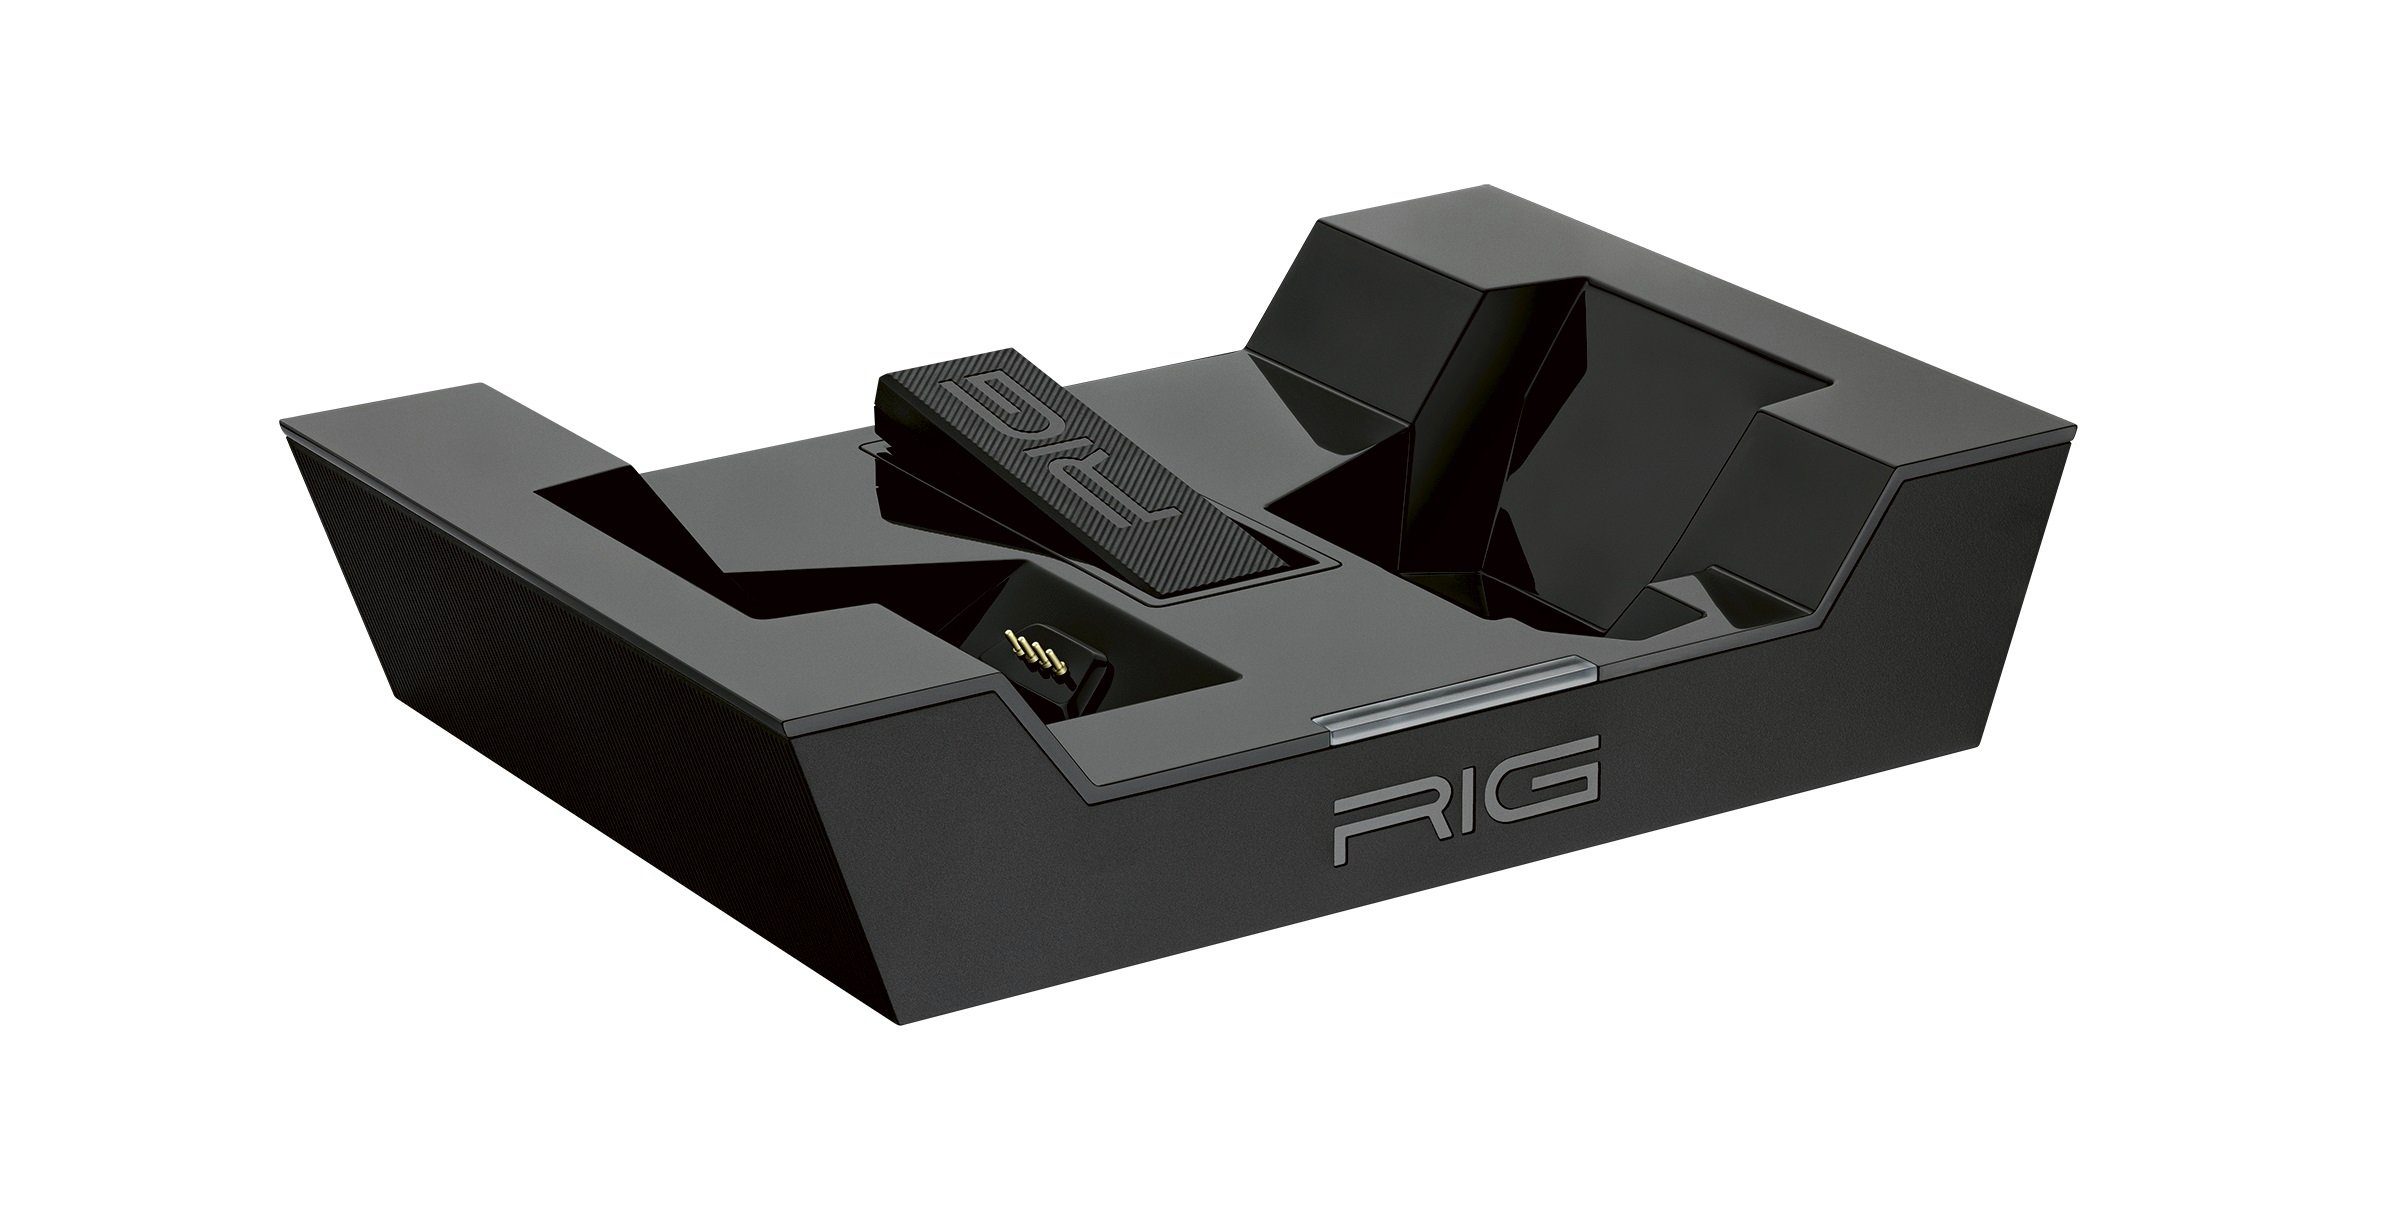 PS4 PS5) 800 HS, RIG PC, mit Gaming-Headset nacon kabellos (kompatibel schwarz, PRO USB, und